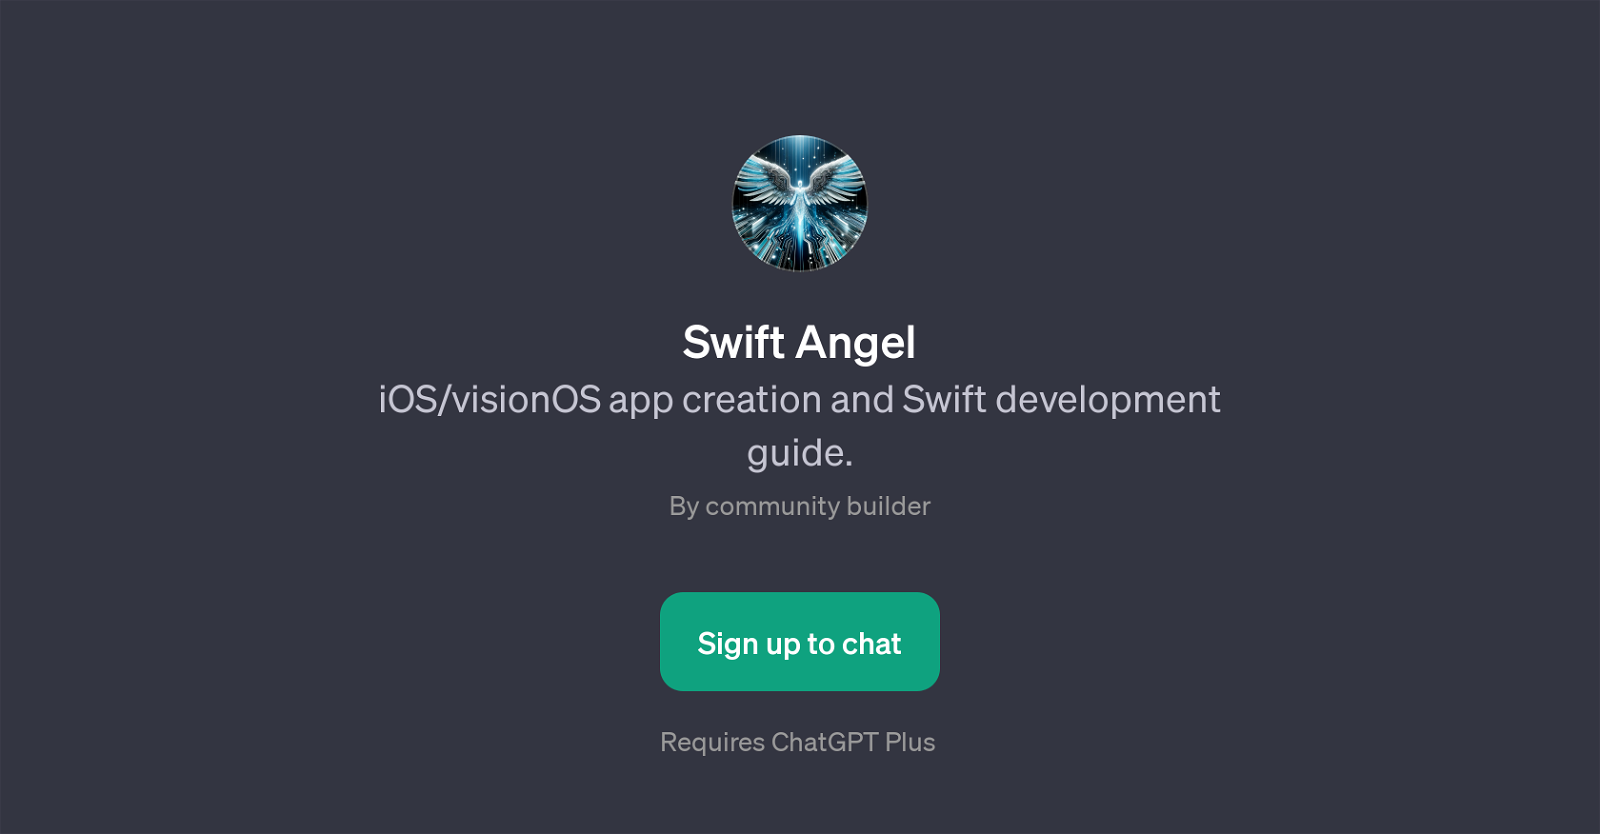 Swift Angel website